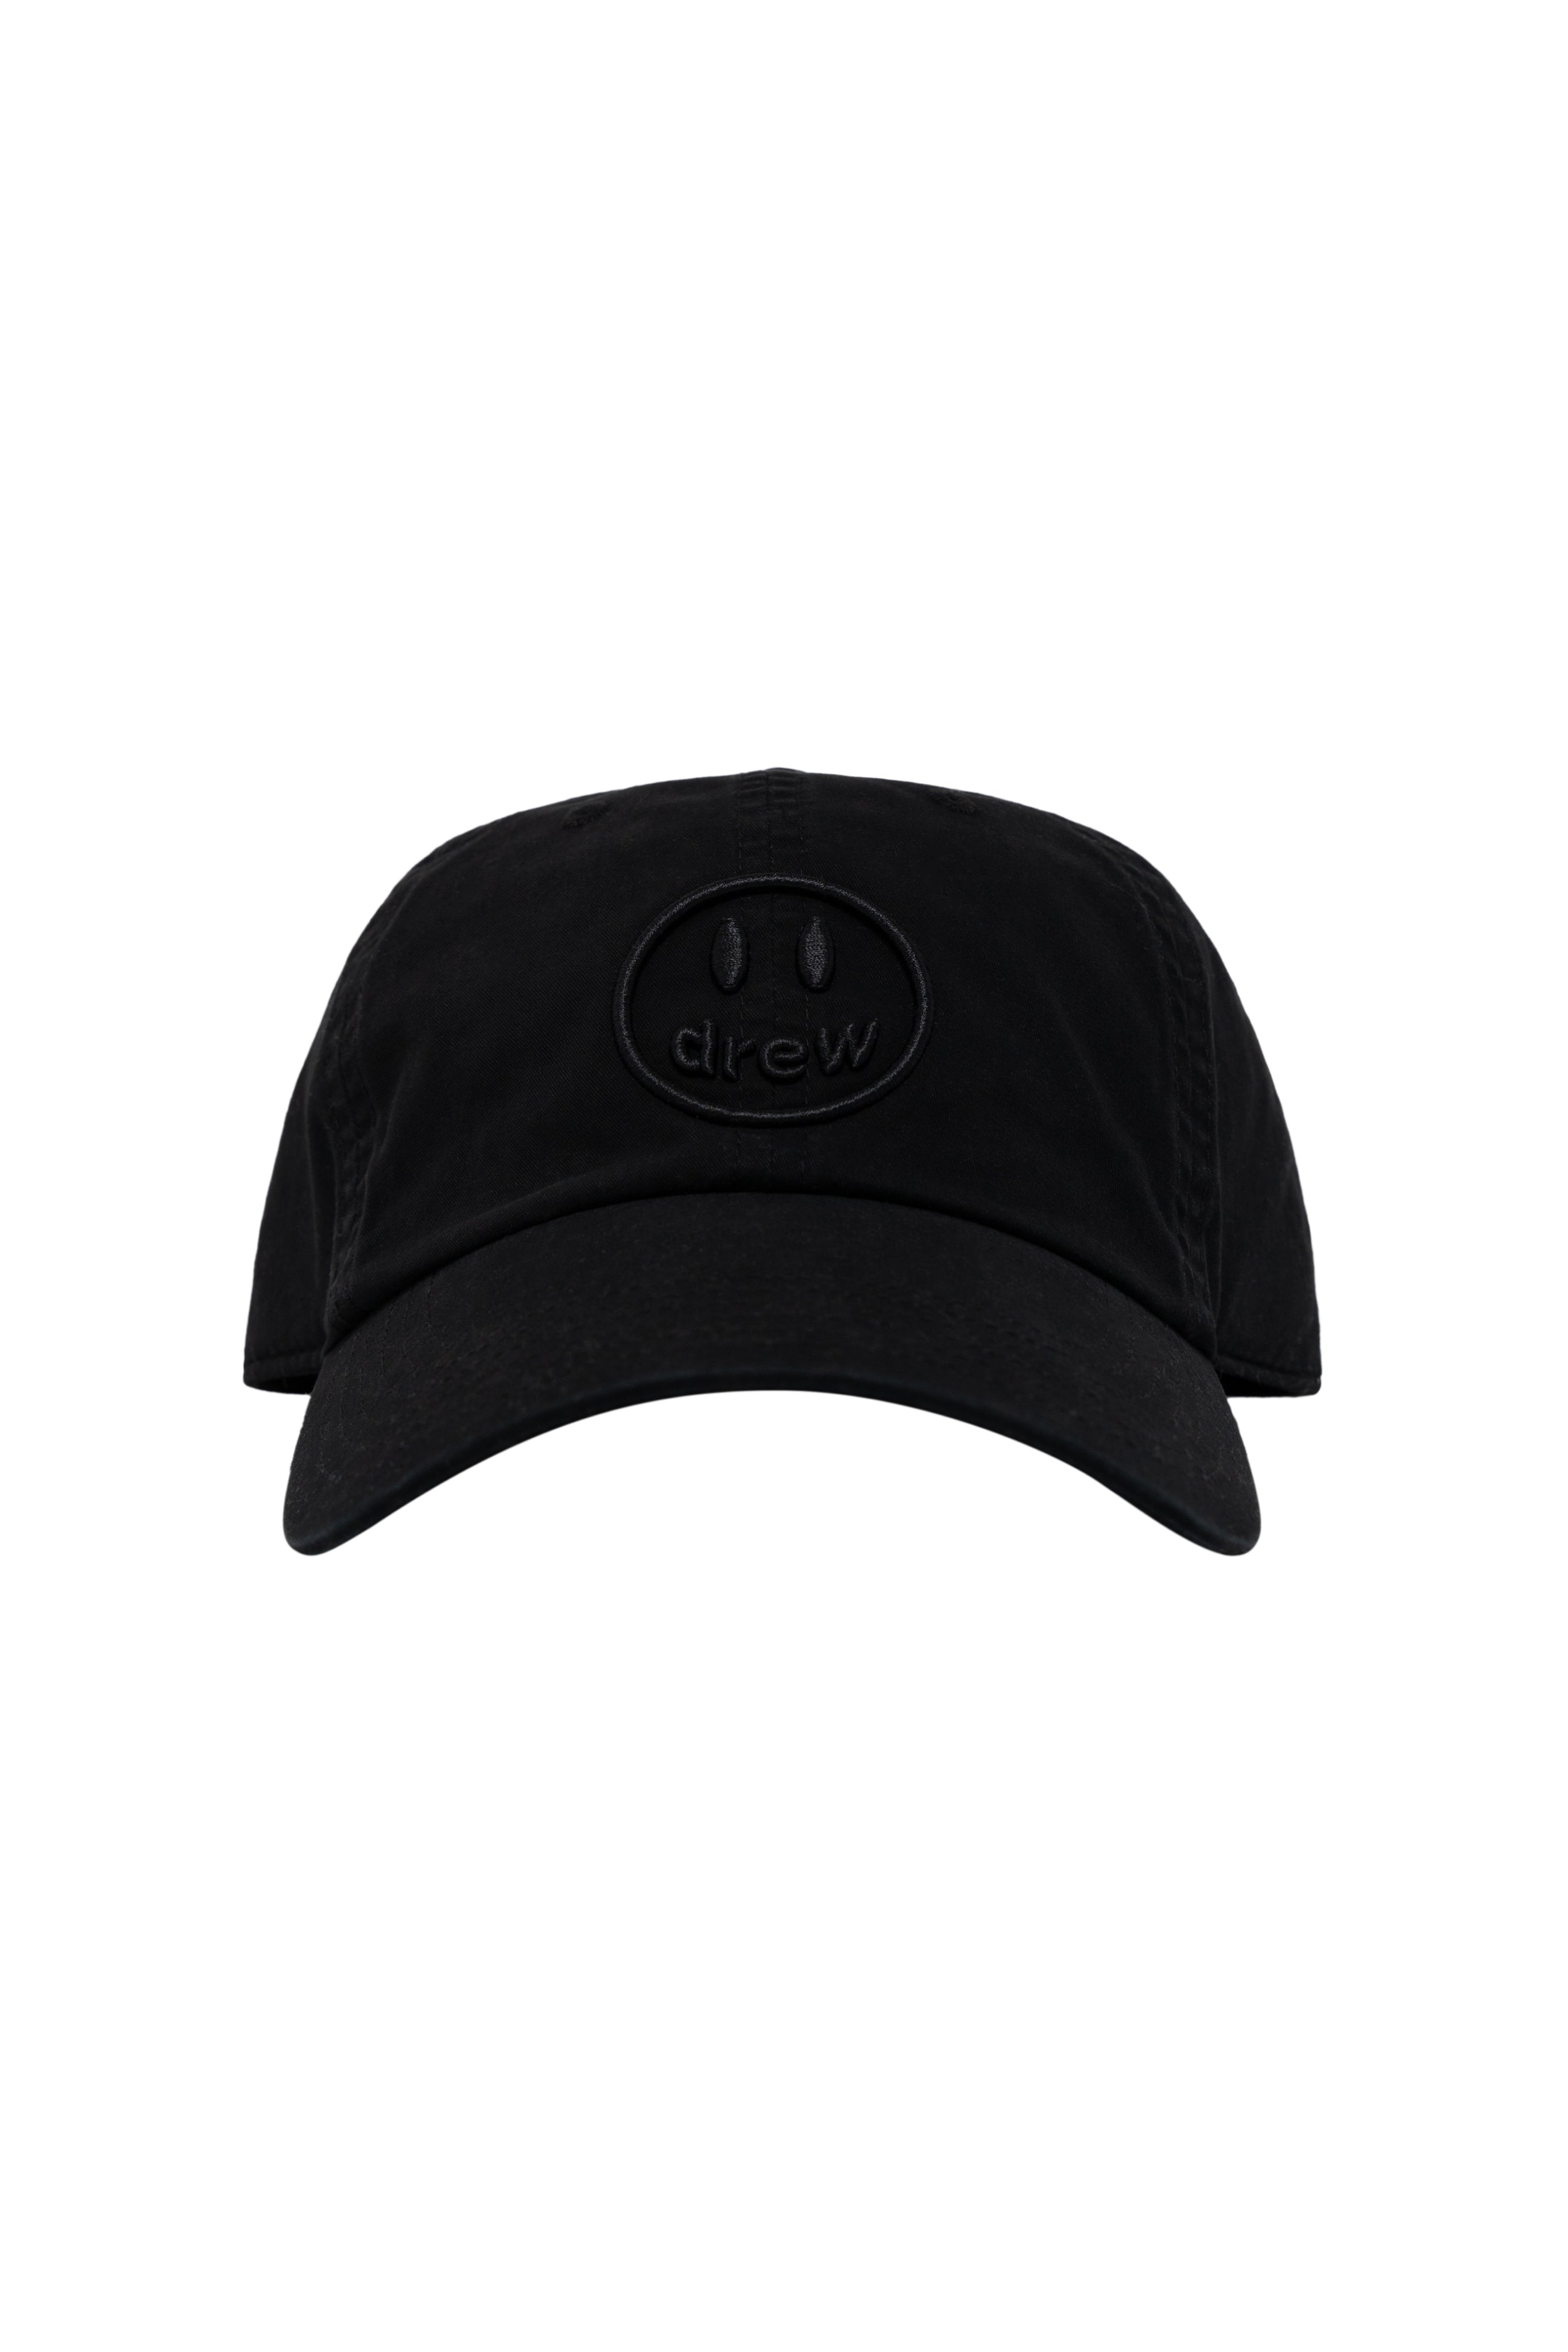 drew house black cap